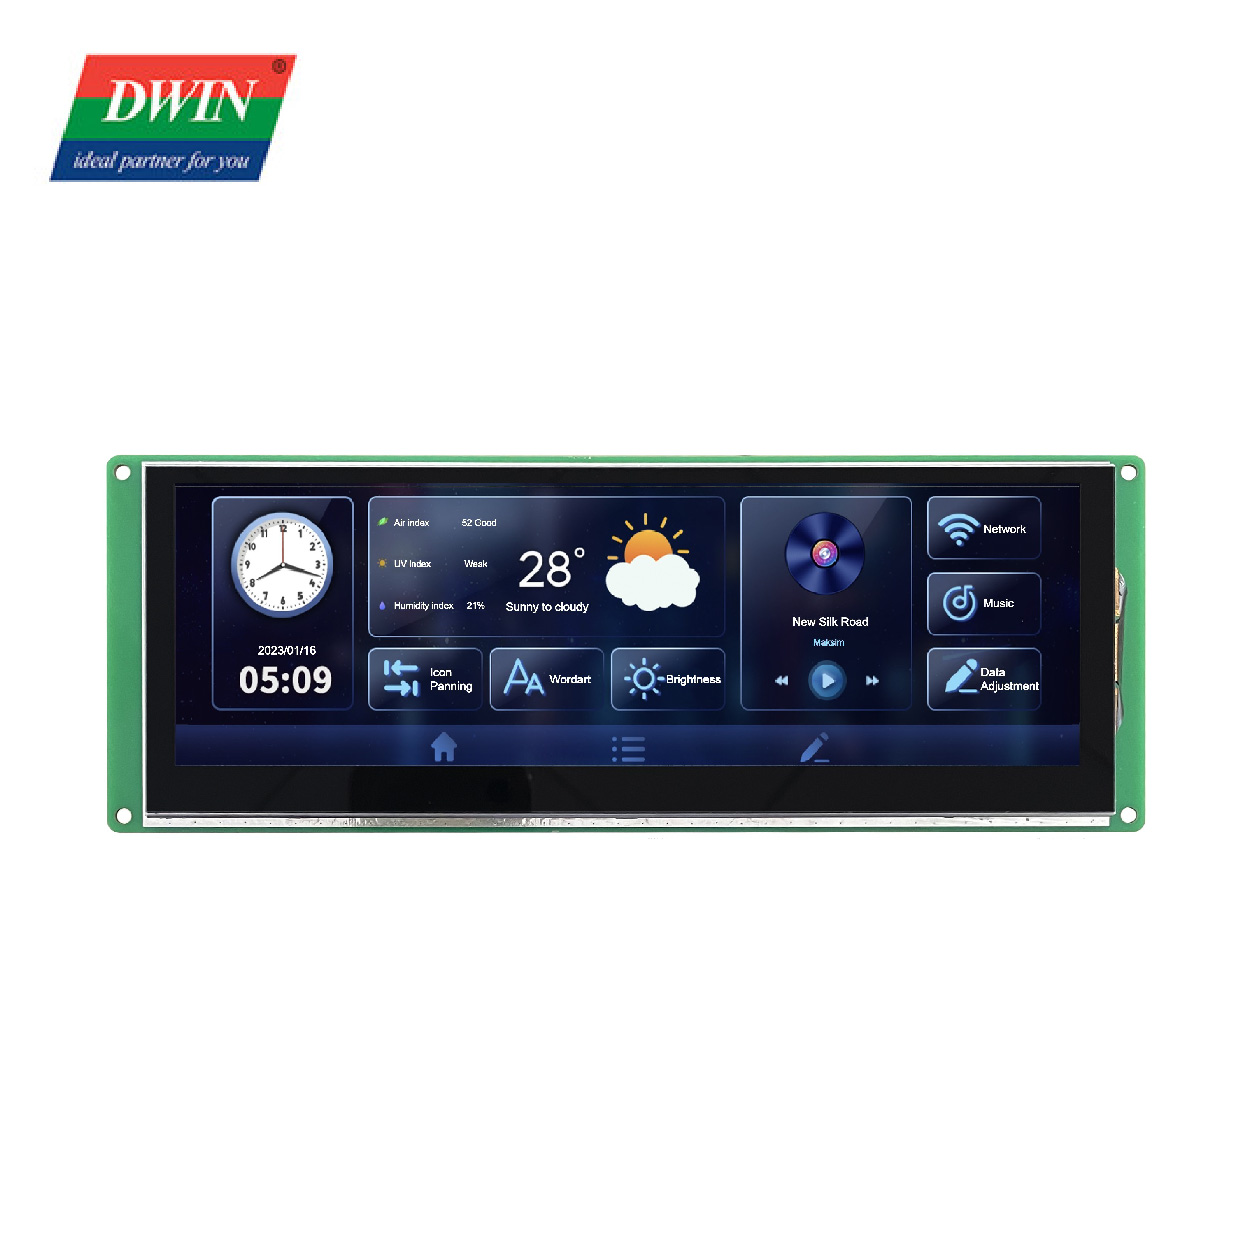 Barre de port série LCD 7,4 pouces DMG12400C074_03W (qualité commerciale)